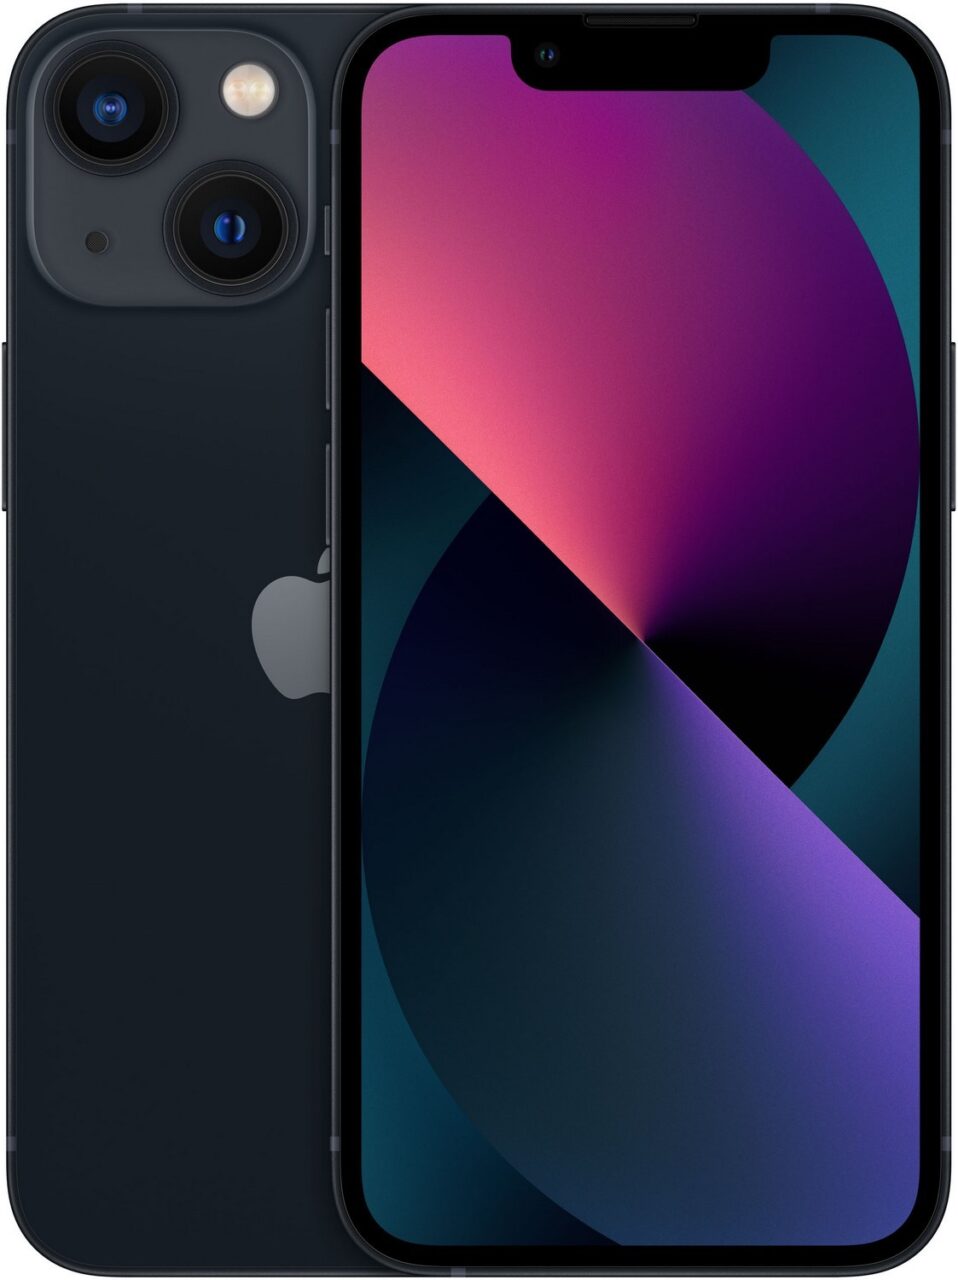 Czarny smartfon z podwójnym aparatem tylne i dużym ekranem z kolorową tapetą.